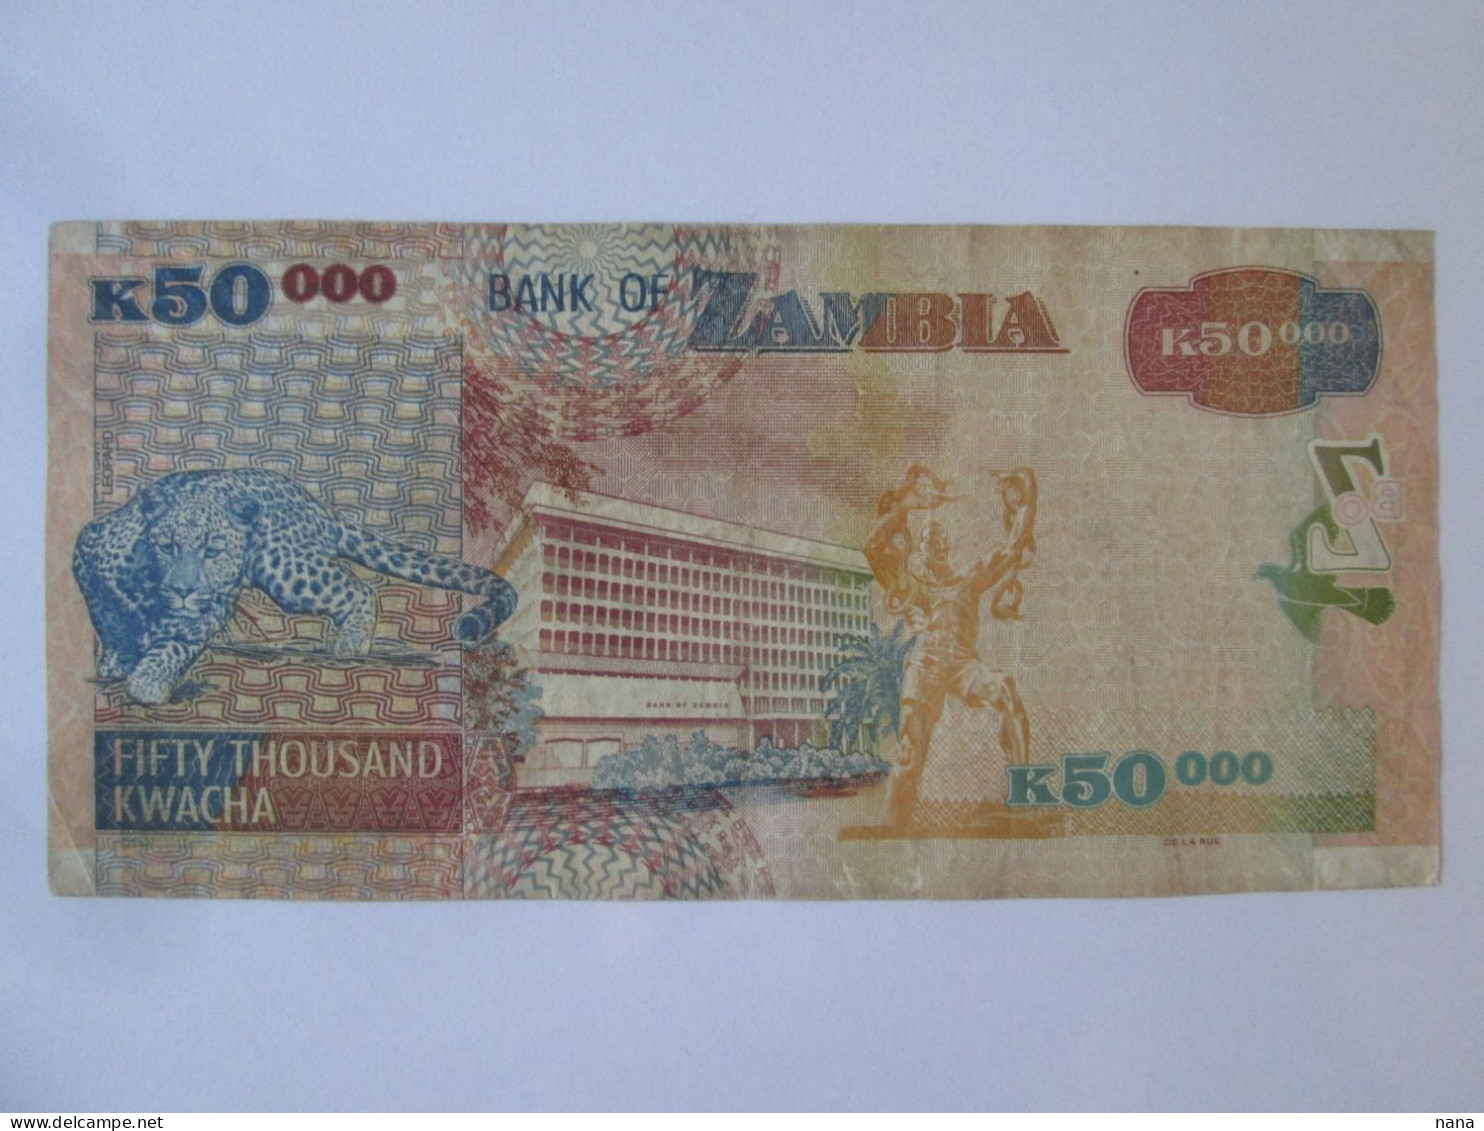 Rare! Zambia 50000 Kwacha 2006 Banknote,see Pictures - Sambia